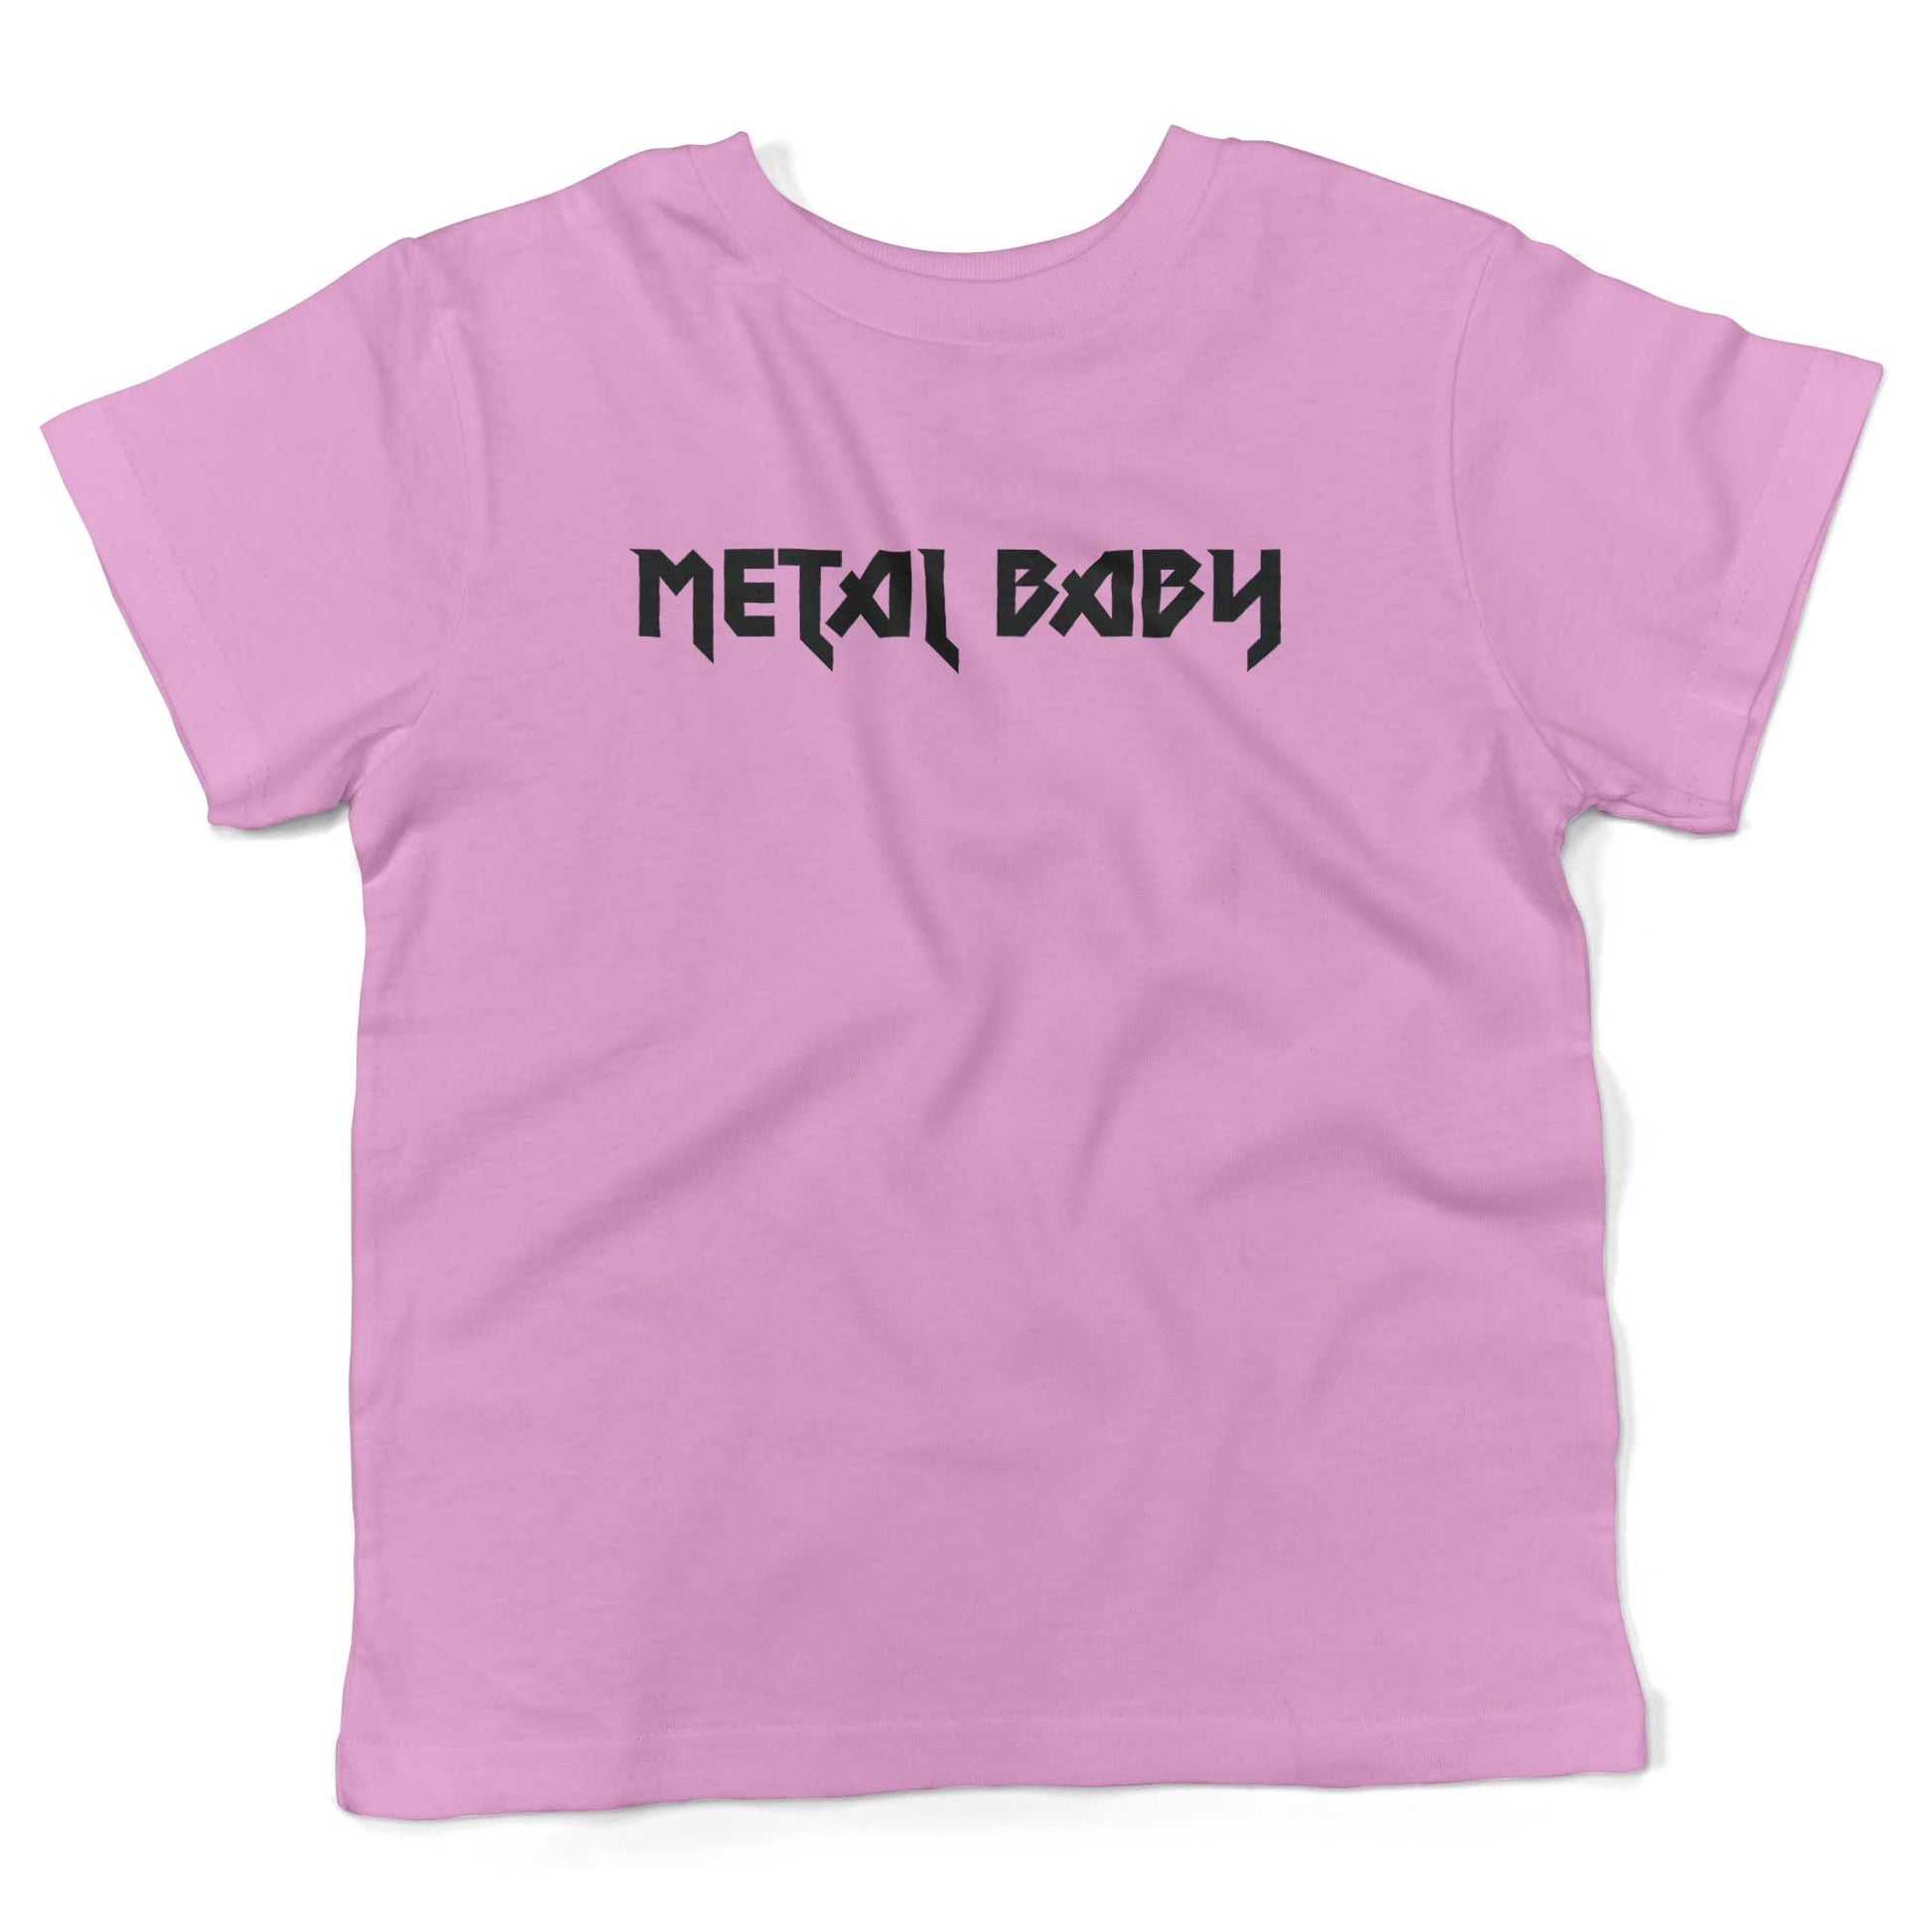 Metal Baby Toddler Shirt-Organic Pink-2T